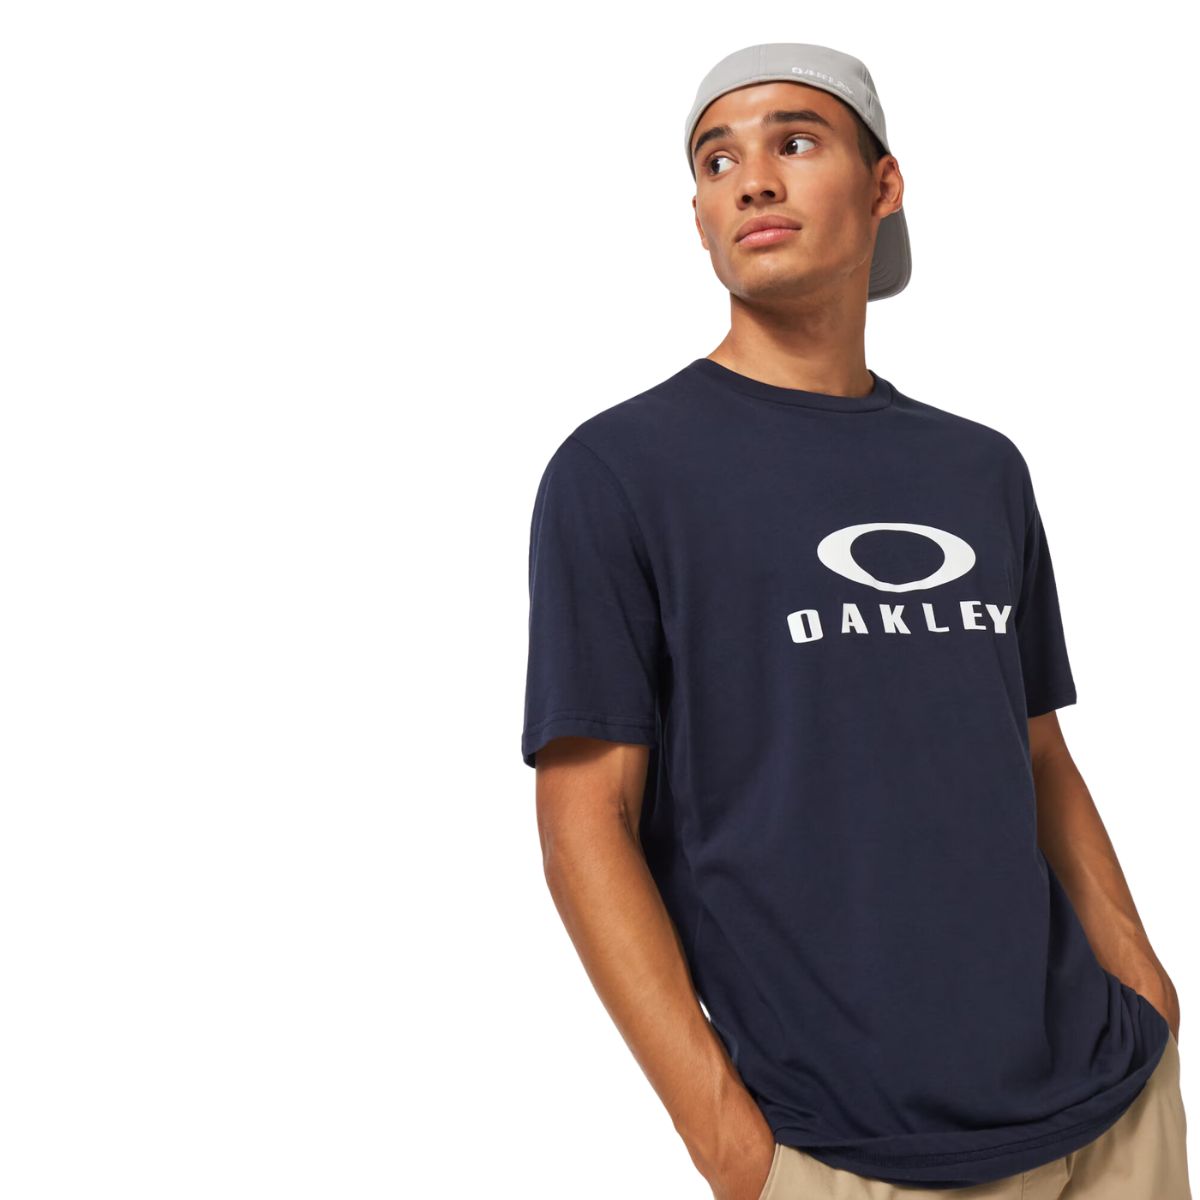 Oakley Bark T-Shirt Herren